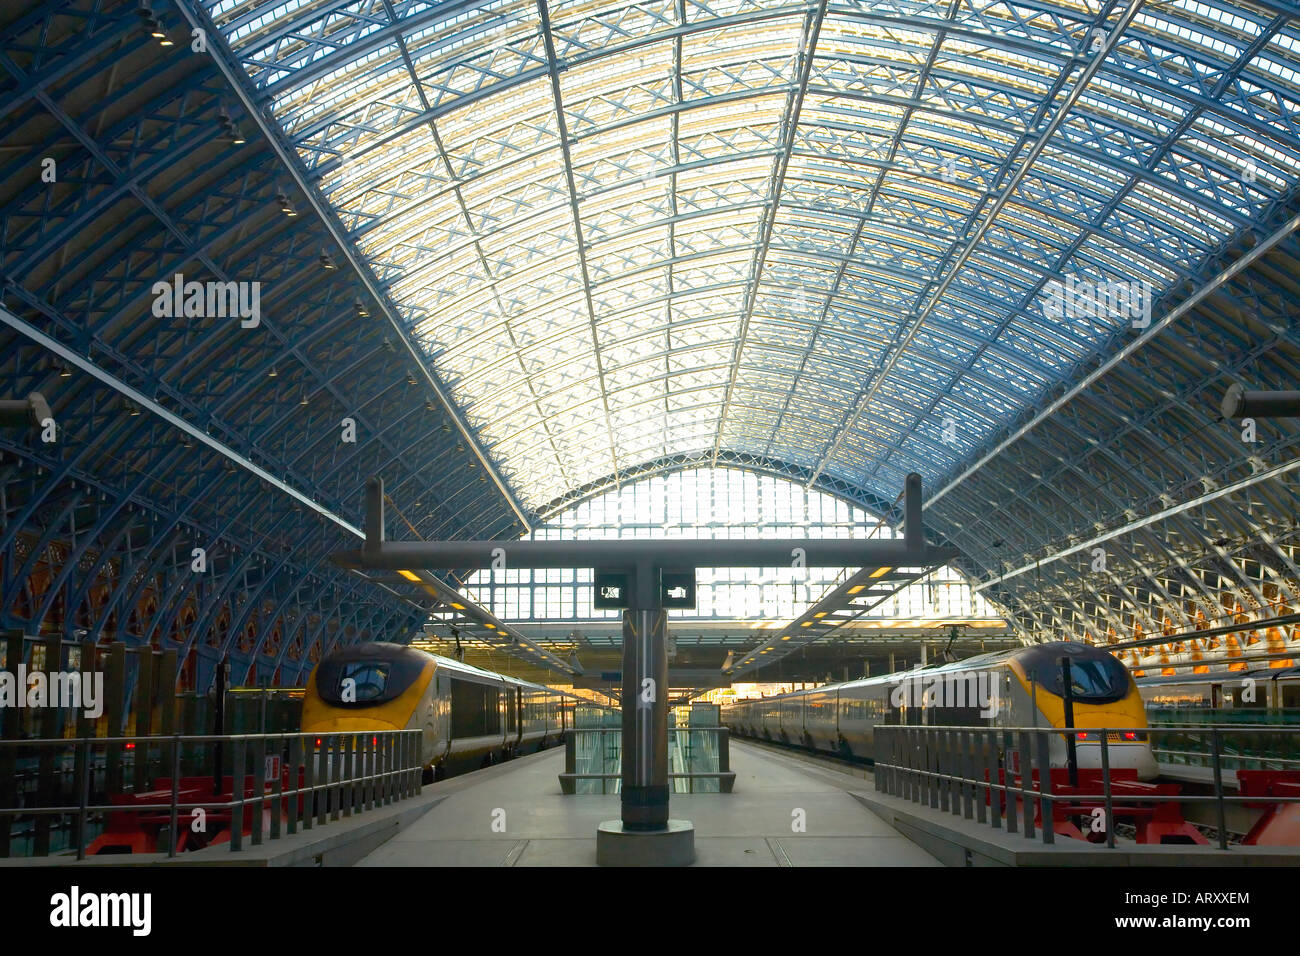 Eurorail eurostar treni ad alta velocità a dalla stazione ferroviaria internazionale di St Pancras Londra Inghilterra Regno Unito Regno Unito GB Foto Stock